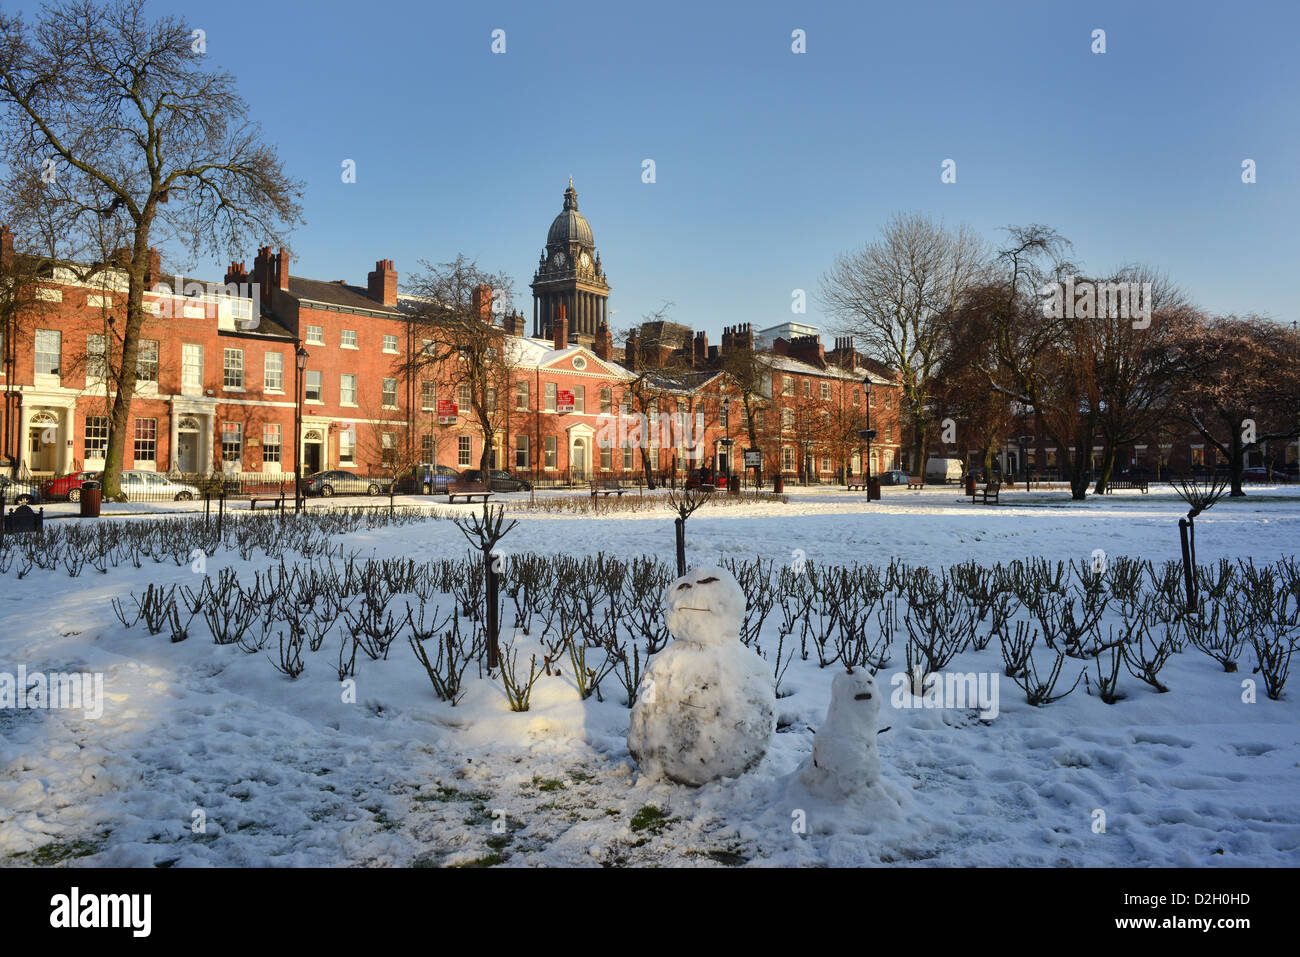 Les bonshommes de neige dans la région de park square par Leeds Hôtel de ville construit en 1858 conçu par Cuthbert Broderick, hiver,Yorkshire, Royaume-Uni Banque D'Images